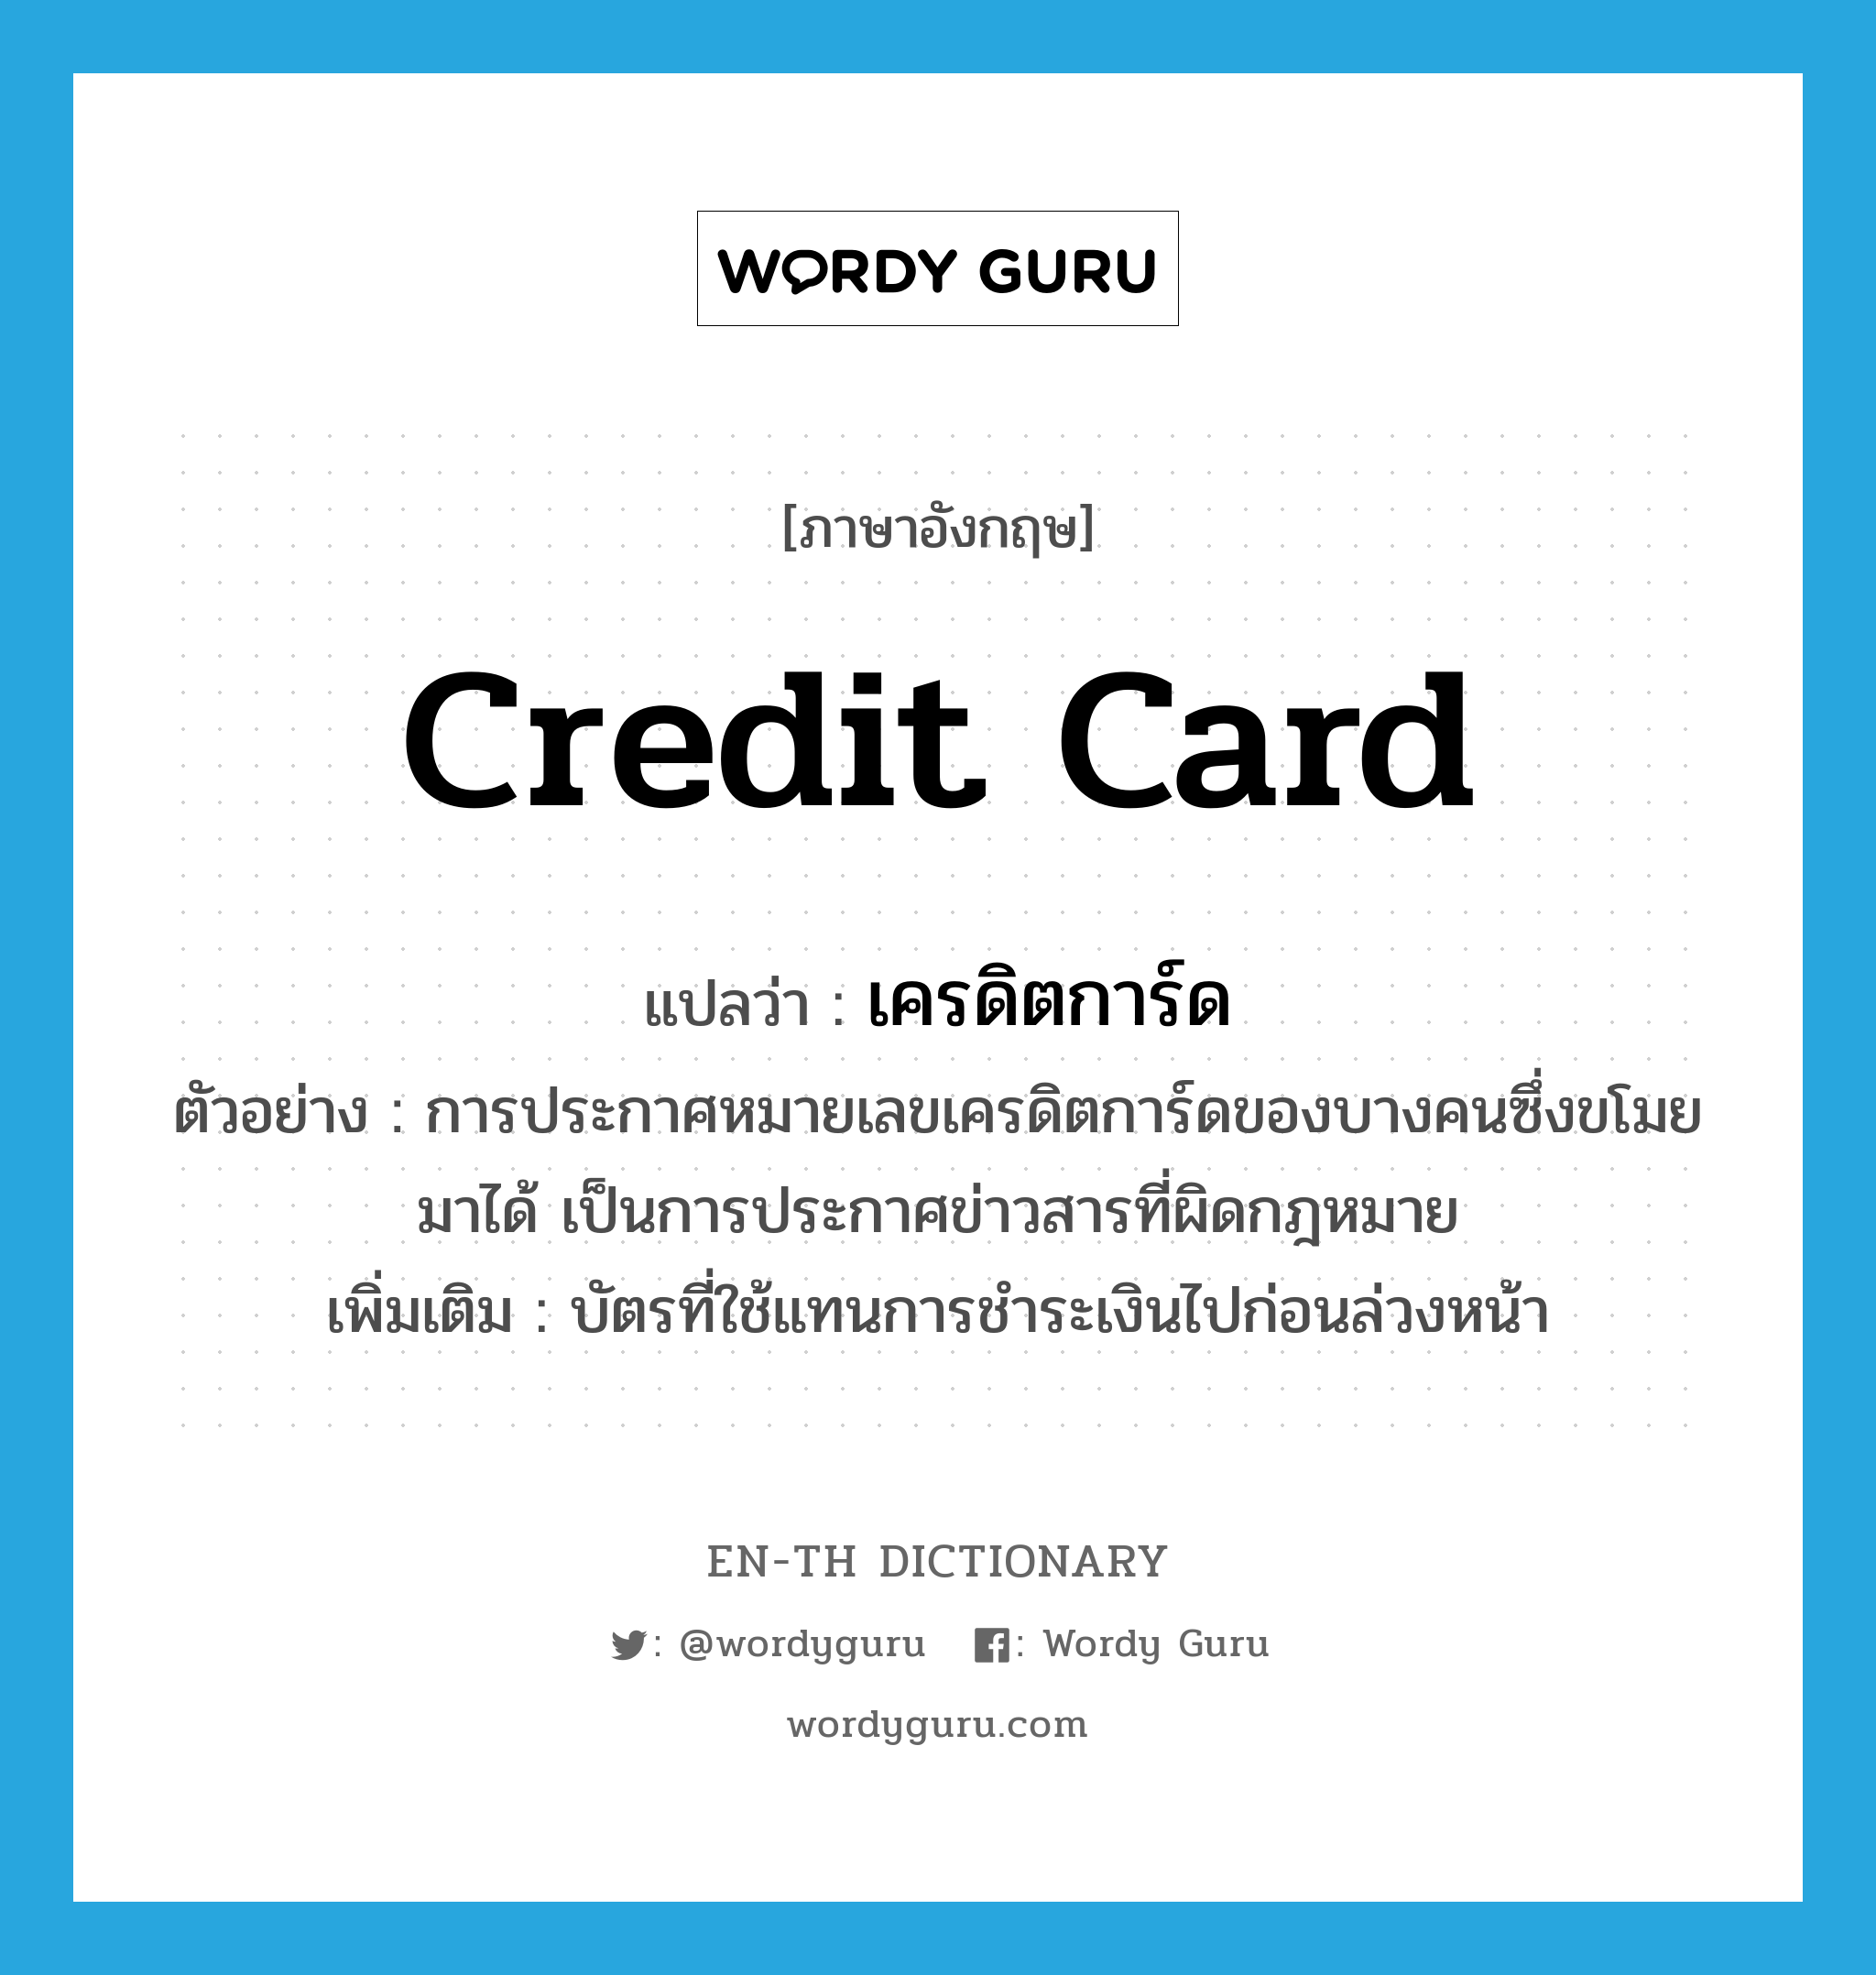 เครดิตการ์ด ภาษาอังกฤษ?, คำศัพท์ภาษาอังกฤษ เครดิตการ์ด แปลว่า credit card ประเภท N ตัวอย่าง การประกาศหมายเลขเครดิตการ์ดของบางคนซึ่งขโมยมาได้ เป็นการประกาศข่าวสารที่ผิดกฎหมาย เพิ่มเติม บัตรที่ใช้แทนการชำระเงินไปก่อนล่วงหน้า หมวด N